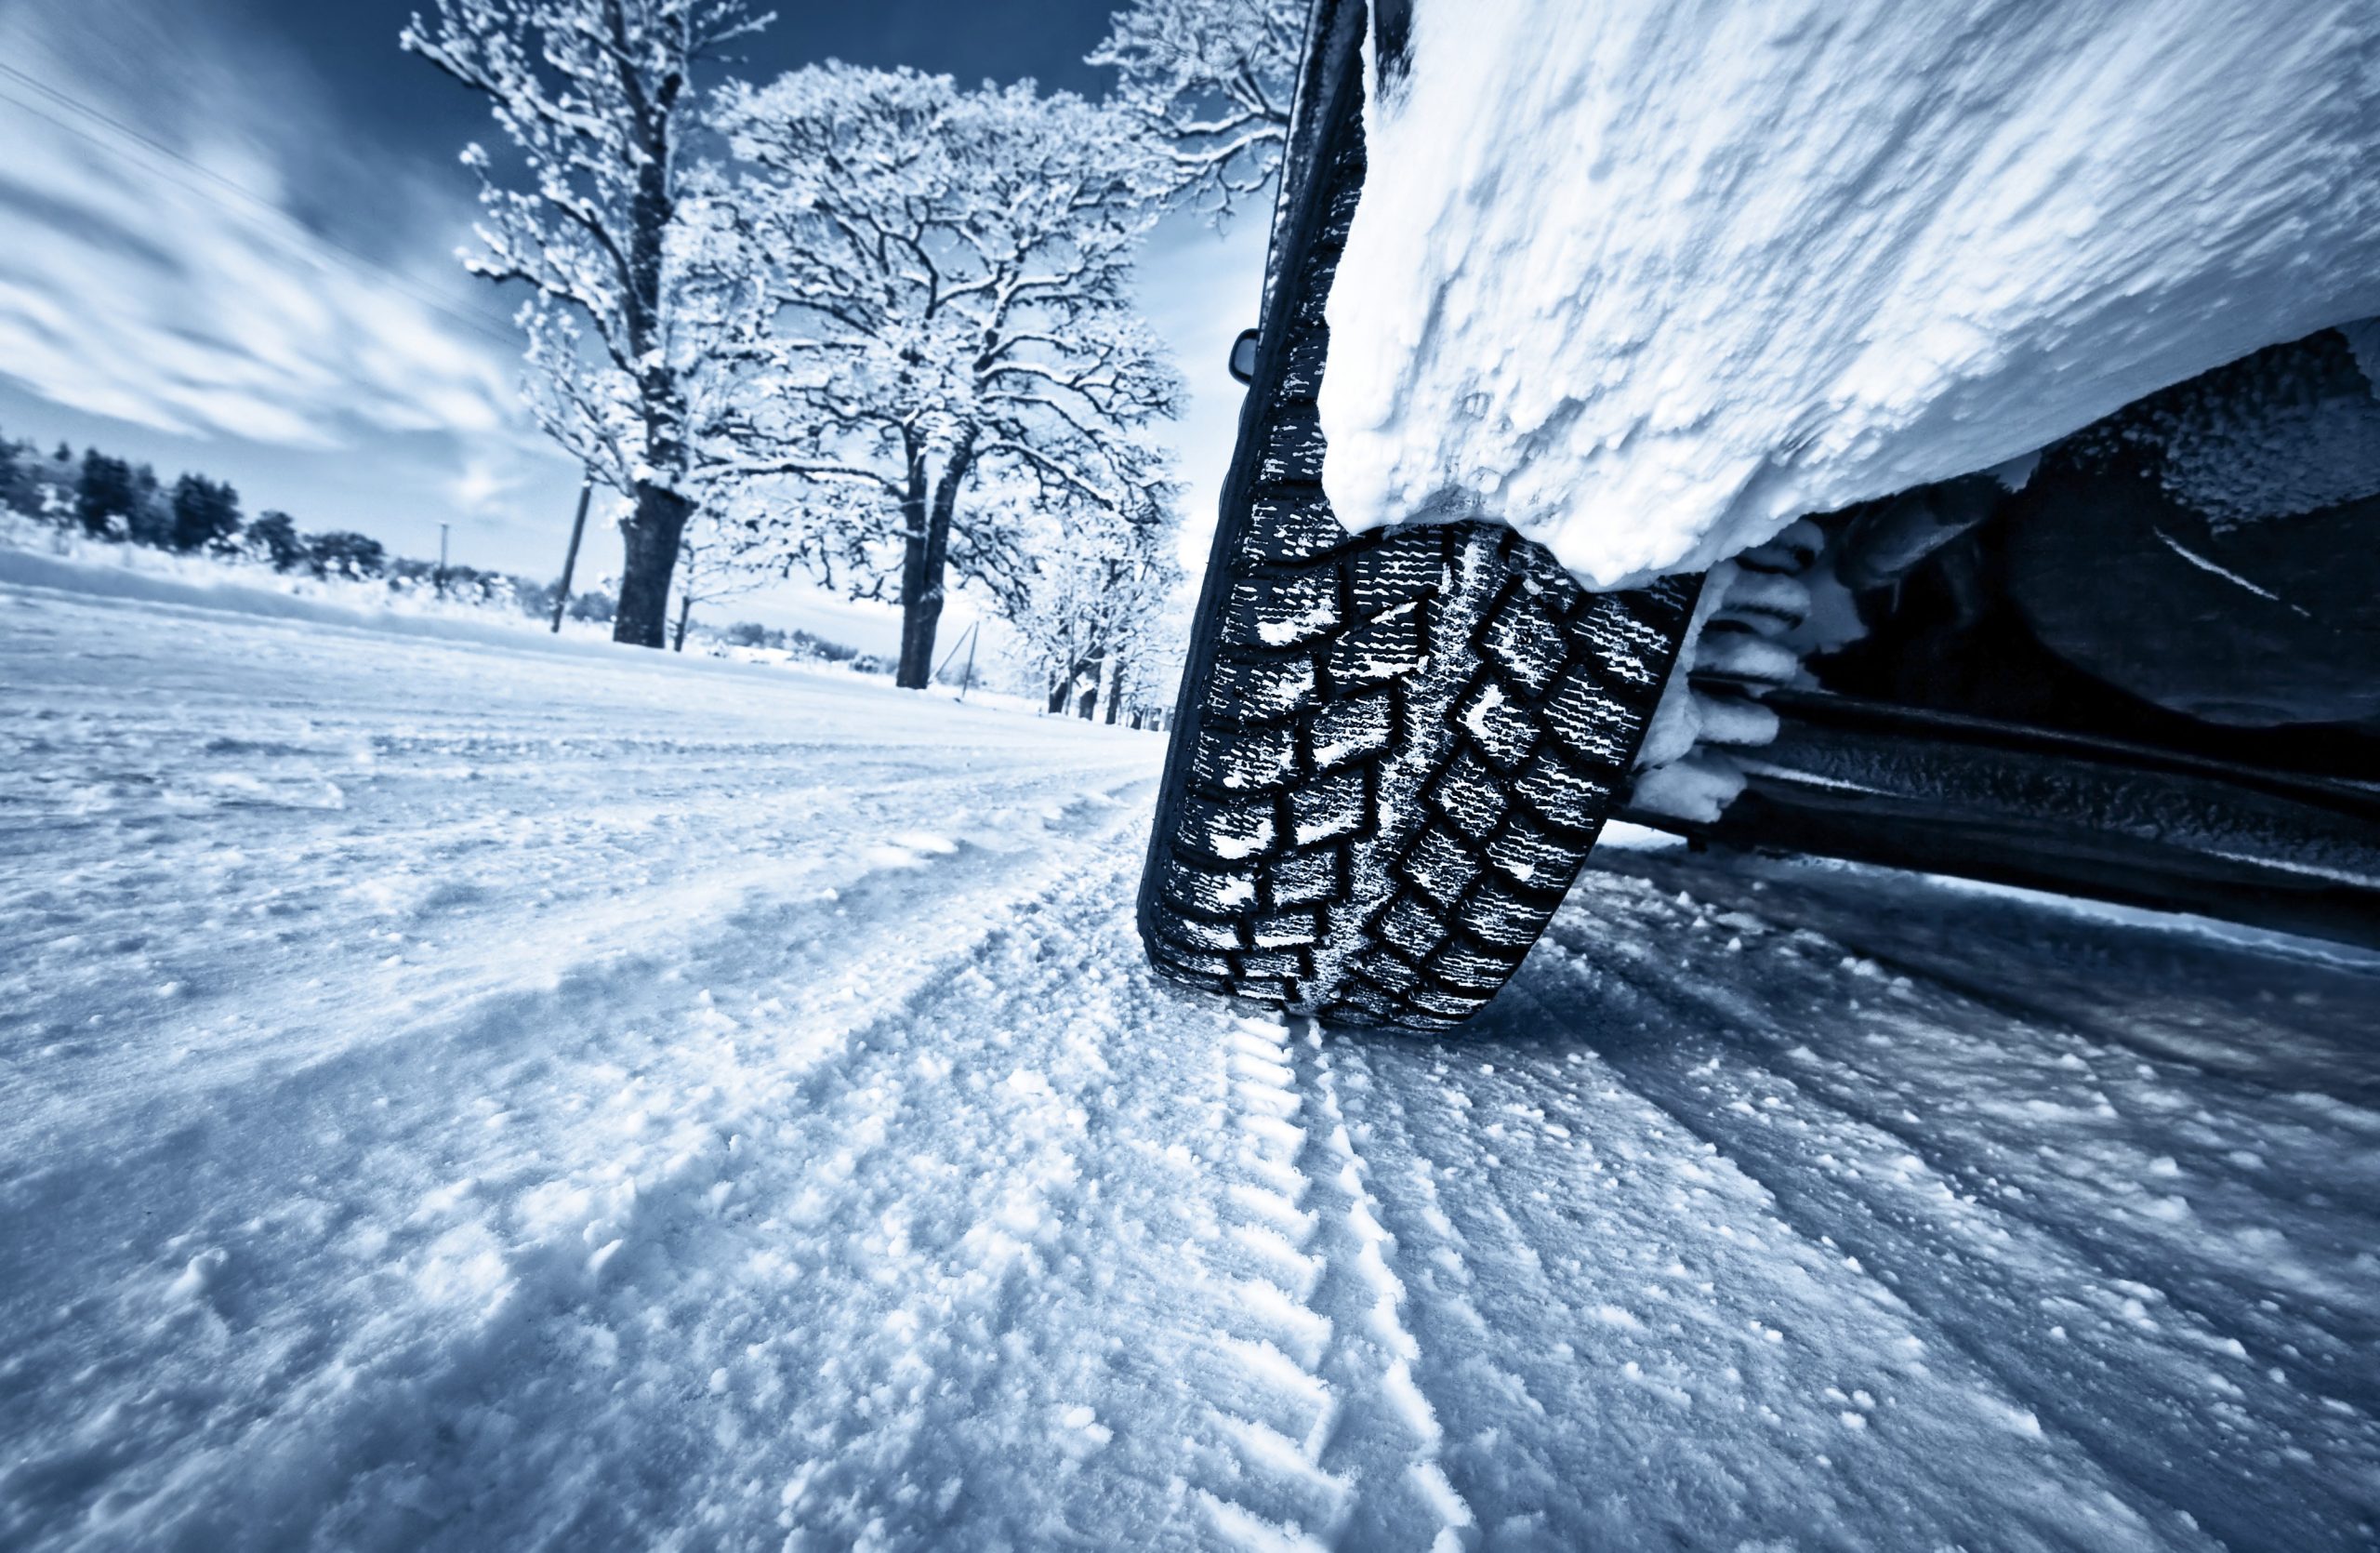 Είναι το αυτοκίνητό σας έτοιμο για το χειμώνα με χειμερινά ελαστικά;